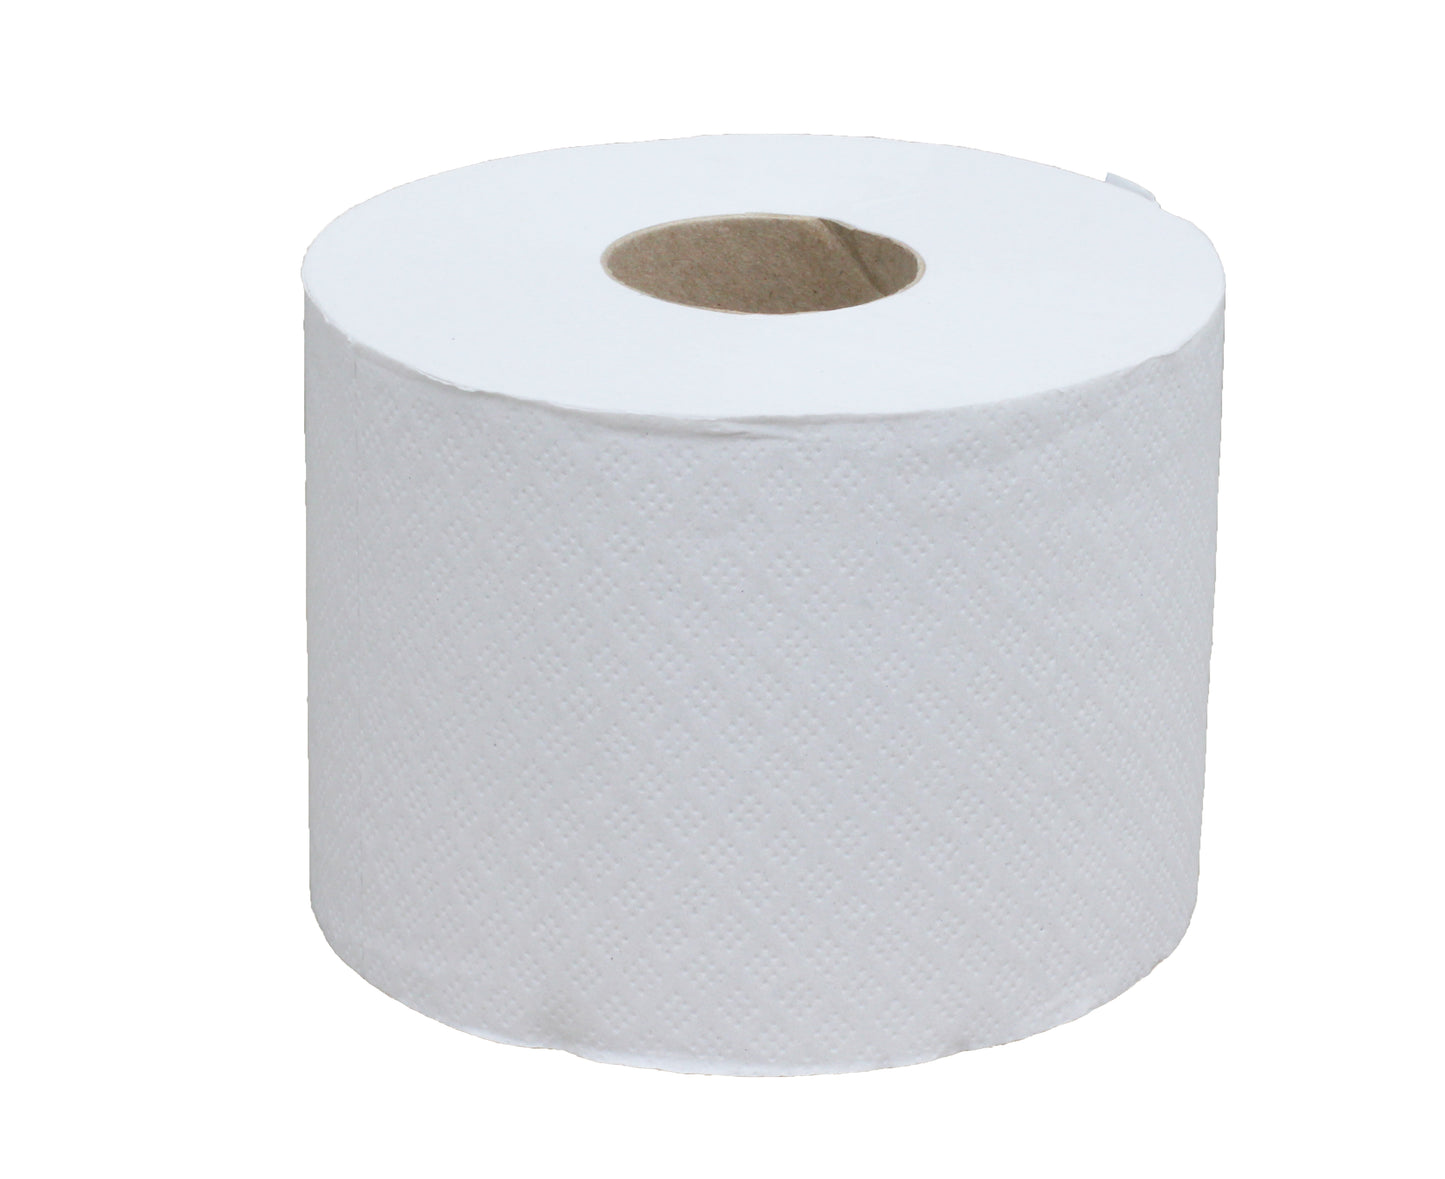 Papeco -- Papier toilette recyclé écolabel Vrac - 36 rouleaux (de